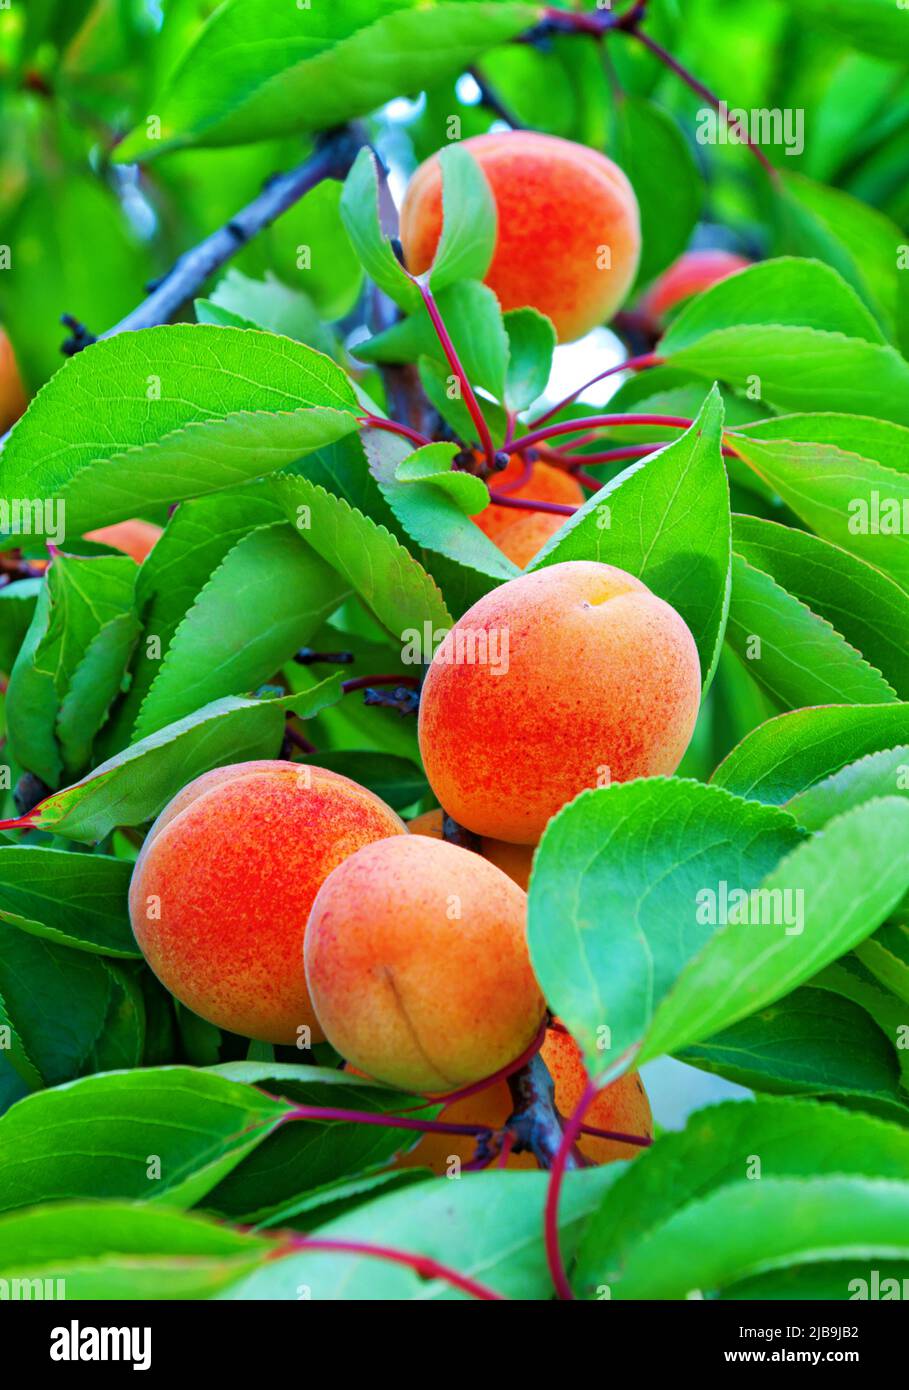 Des abricots mûrs mûrissent sur un abricot parmi les feuilles vertes du verger Banque D'Images